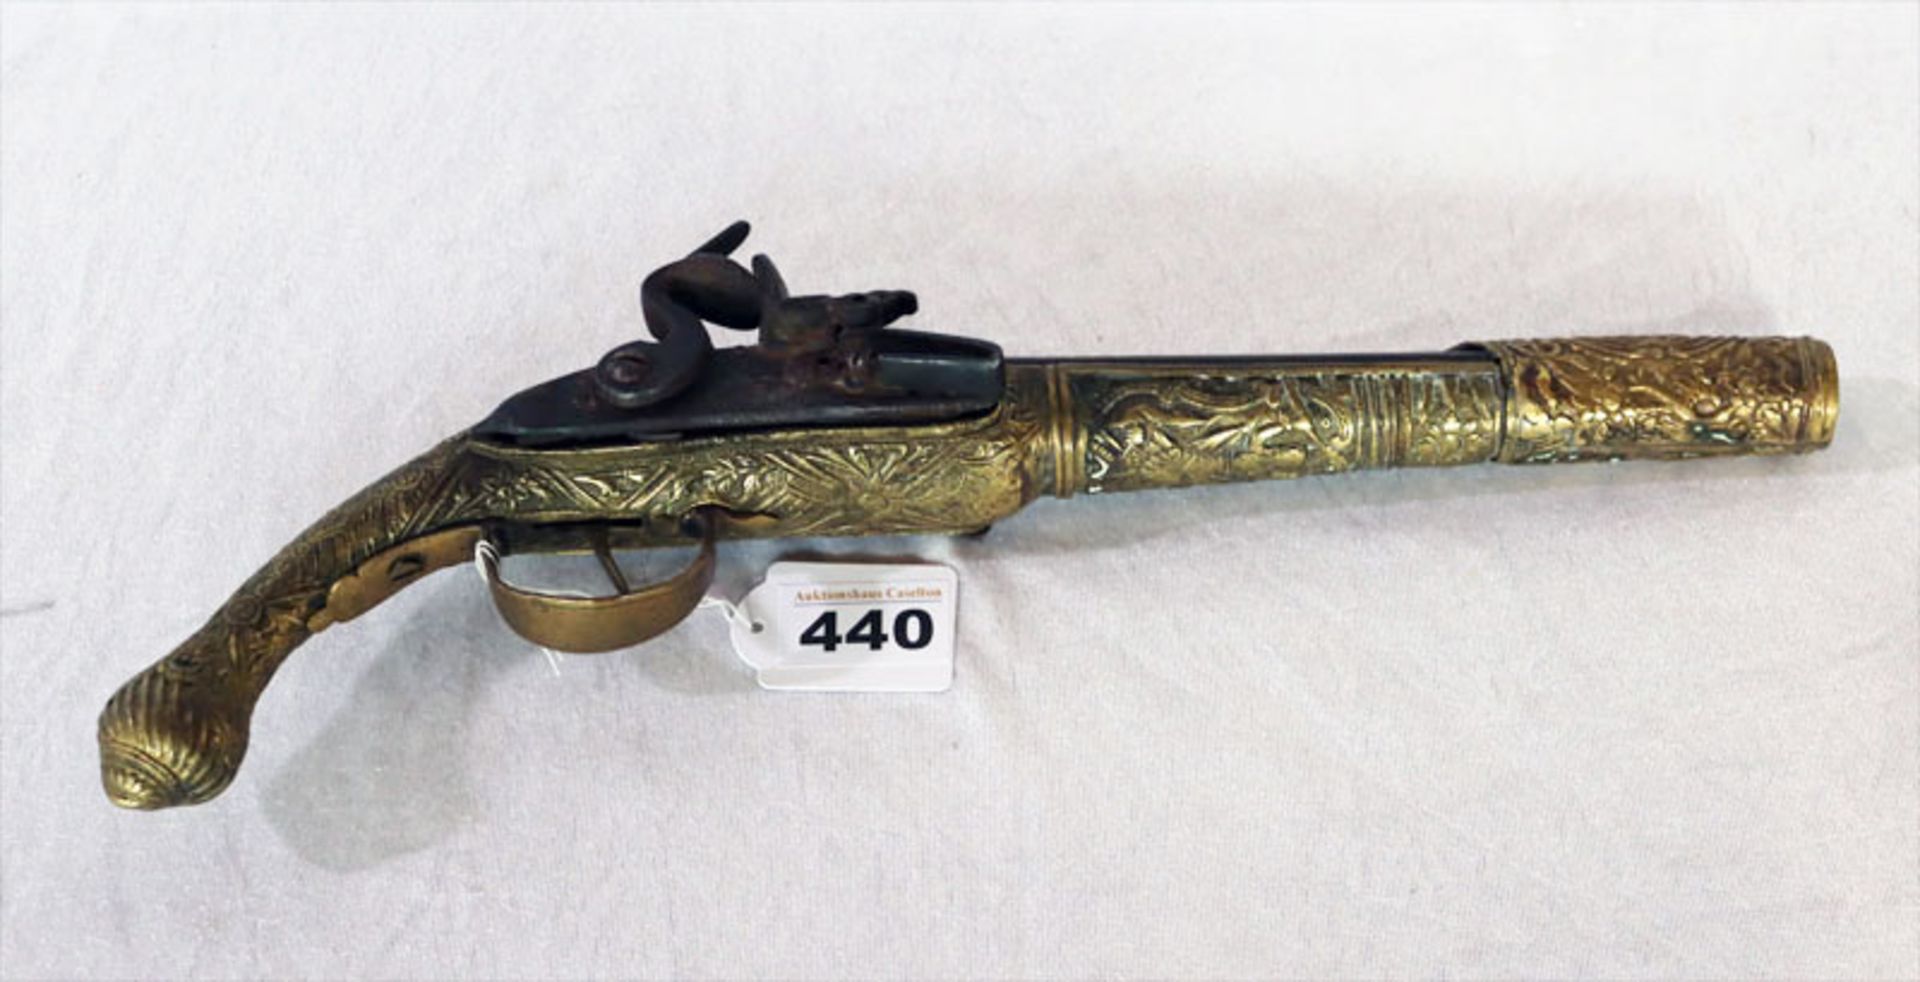 Schwarzpulver Pistole, Anfang 19. Jahrhundert, schöne Metallverzierungen, nicht ganz original, L